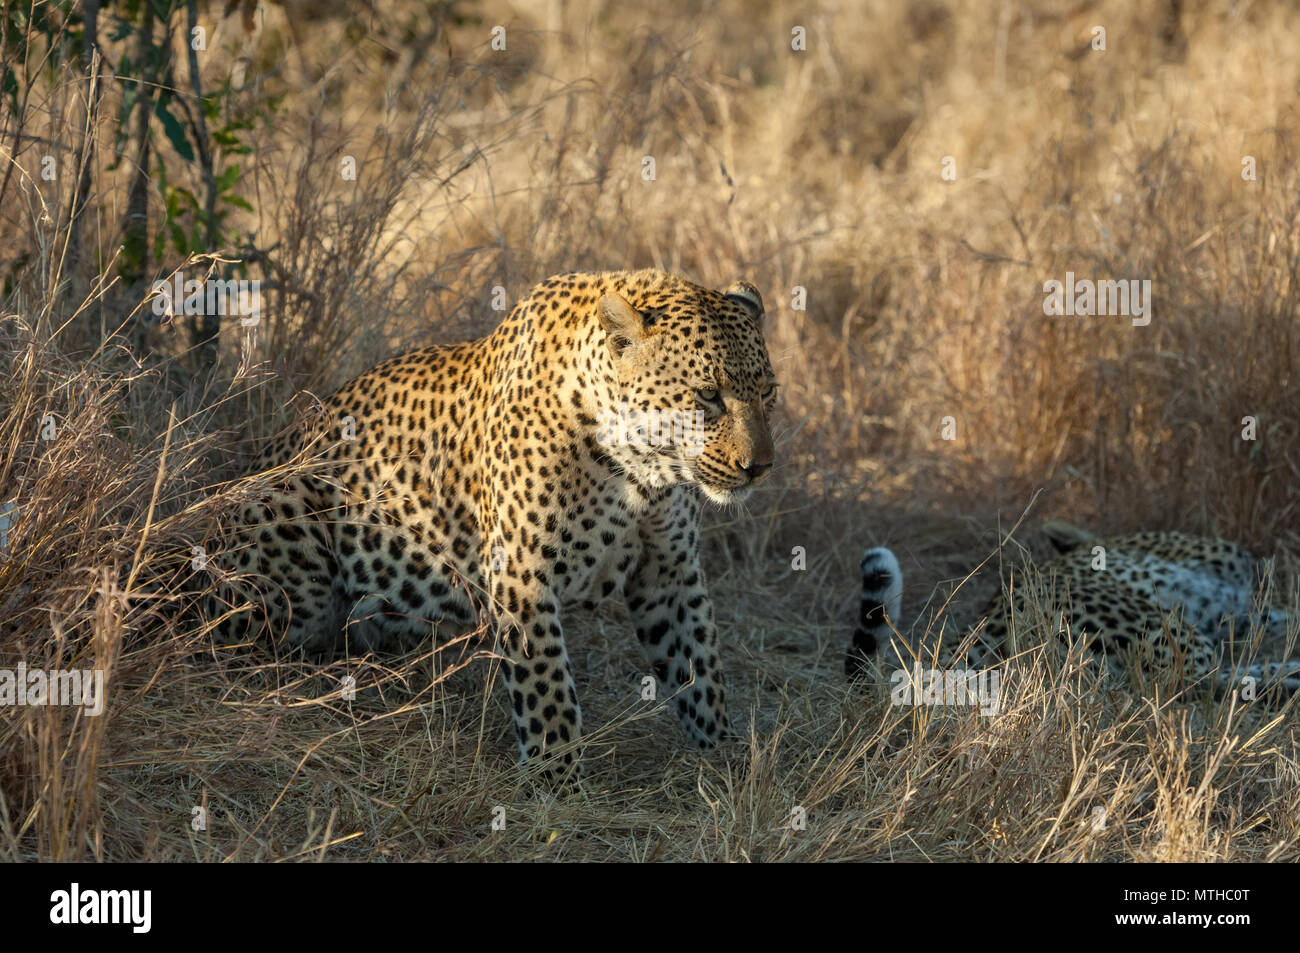 Maschio e femmina leopardi Africana appoggiata all'ombra dopo l'accoppiamento Foto Stock